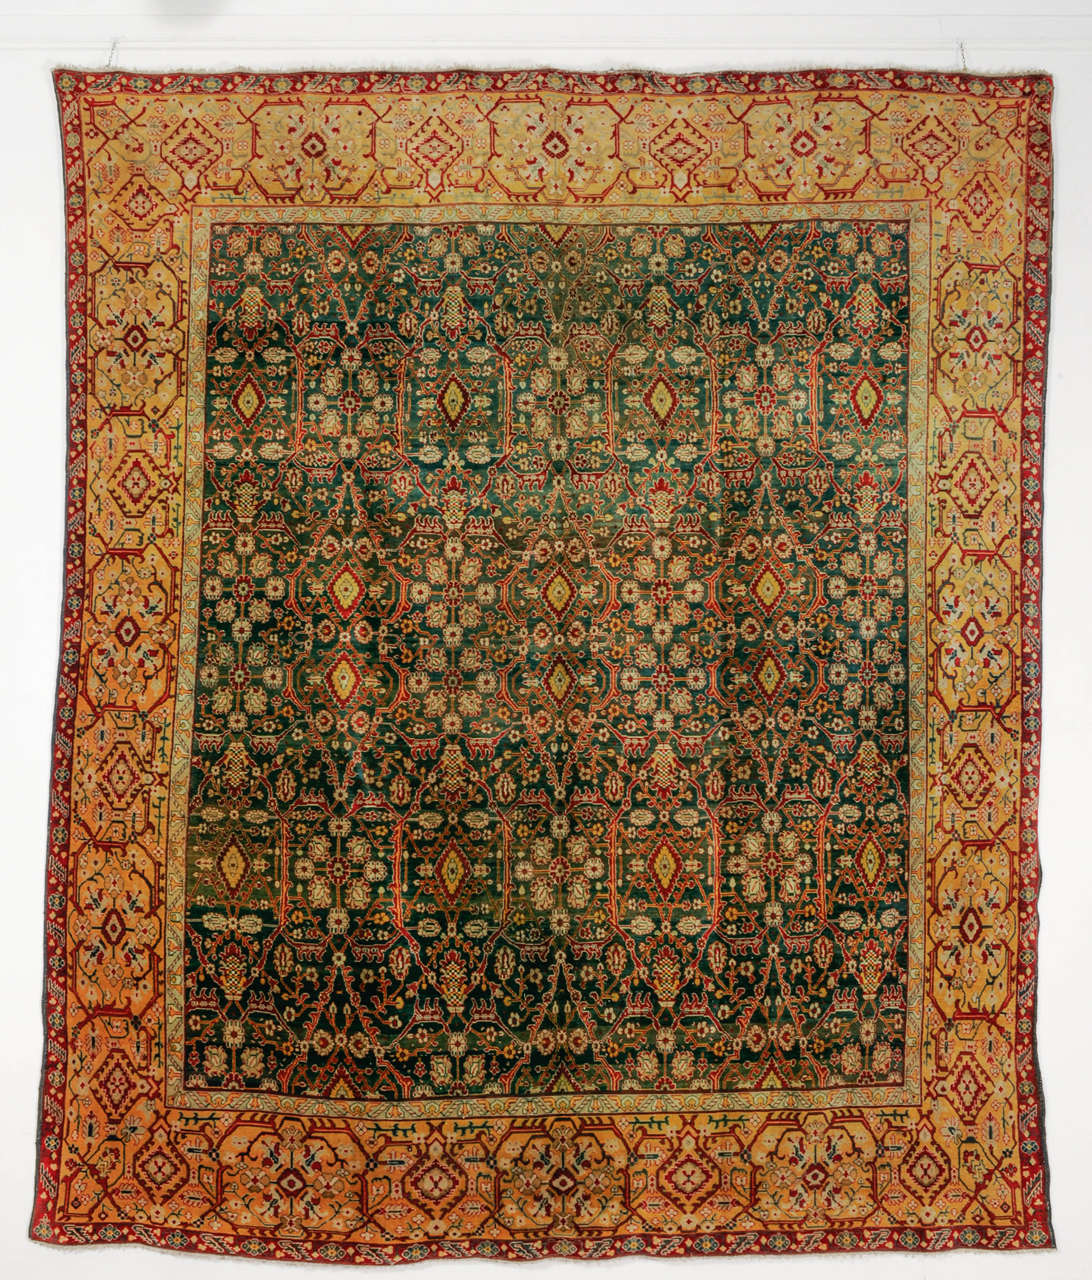 Ein sehr raffinierter und eleganter Agra-Teppich, geknüpft auf einem seltenen smaragdgrünen Hintergrund und eingerahmt von einer weit auseinanderliegenden zitronengelben Bordüre. Agra stellt den Höhepunkt des Marktes für dekorative Teppiche dar, da